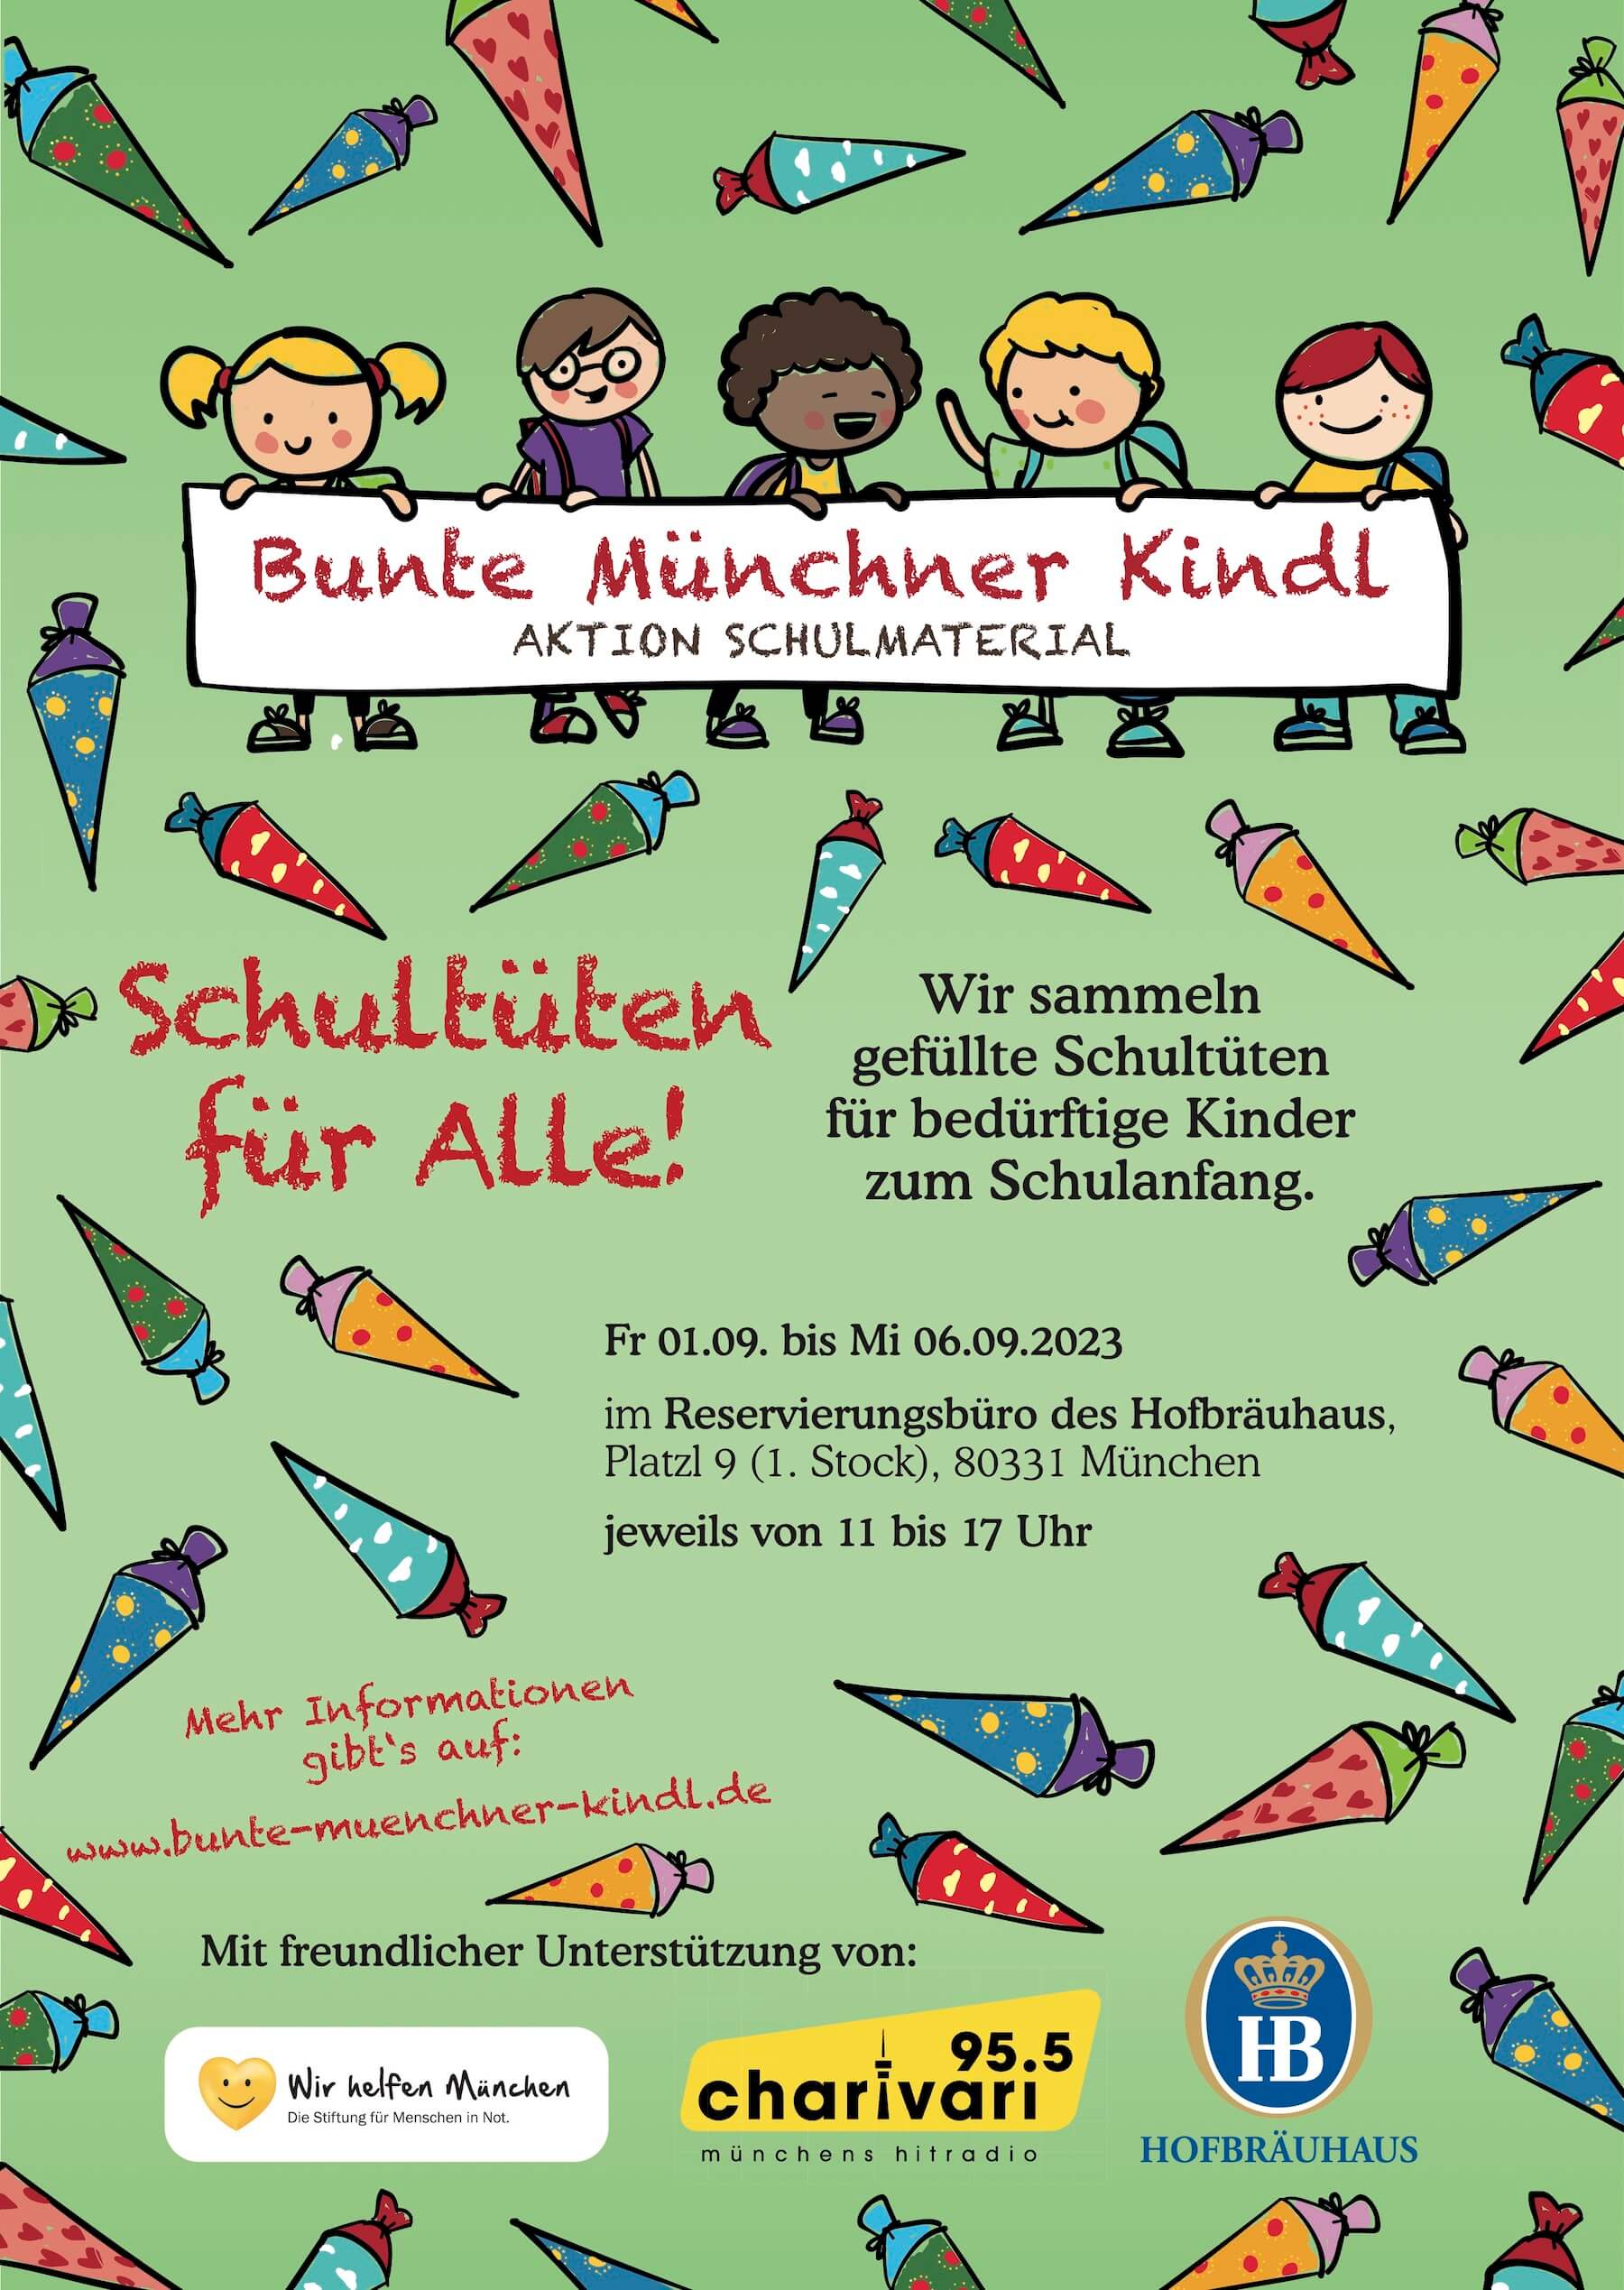 Bunte Münchner Kindl München Schulausstattung Petra Reiter Aktion Schulmaterial helfen